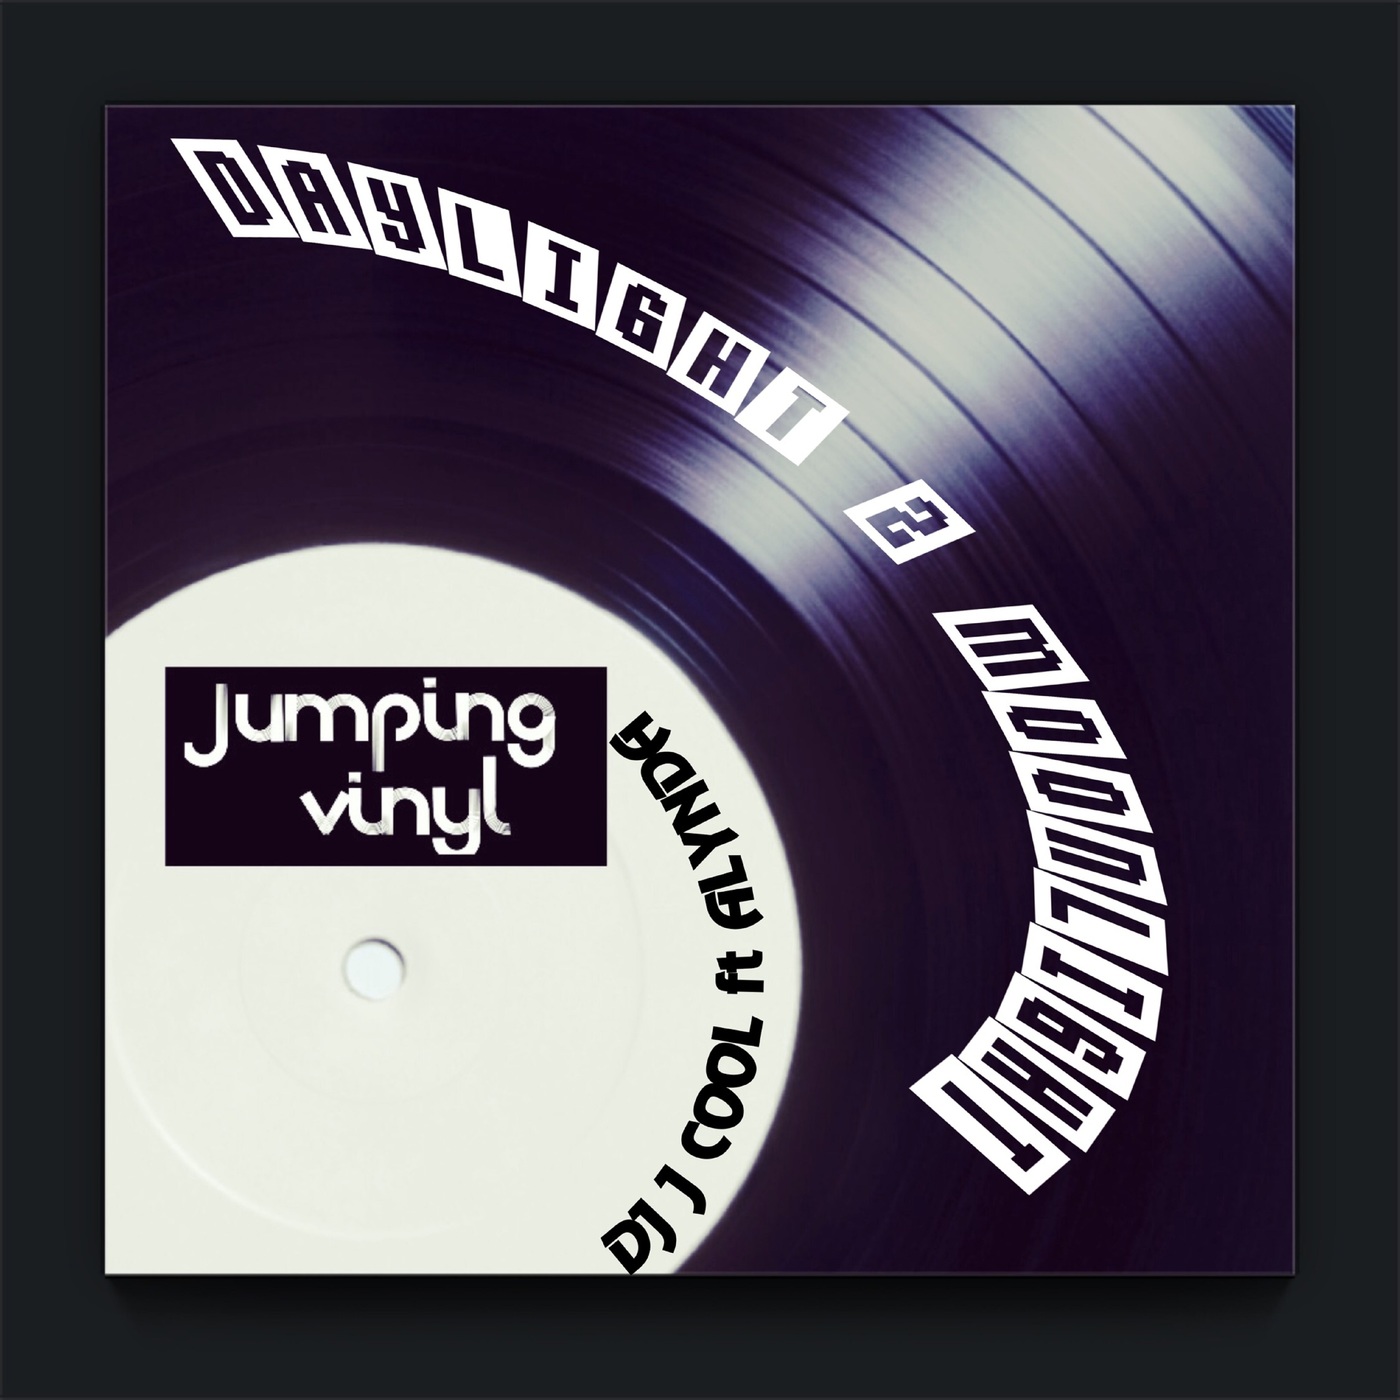 DJ J COOL - Daylight 2 Moonlight / Jumpingvinyl